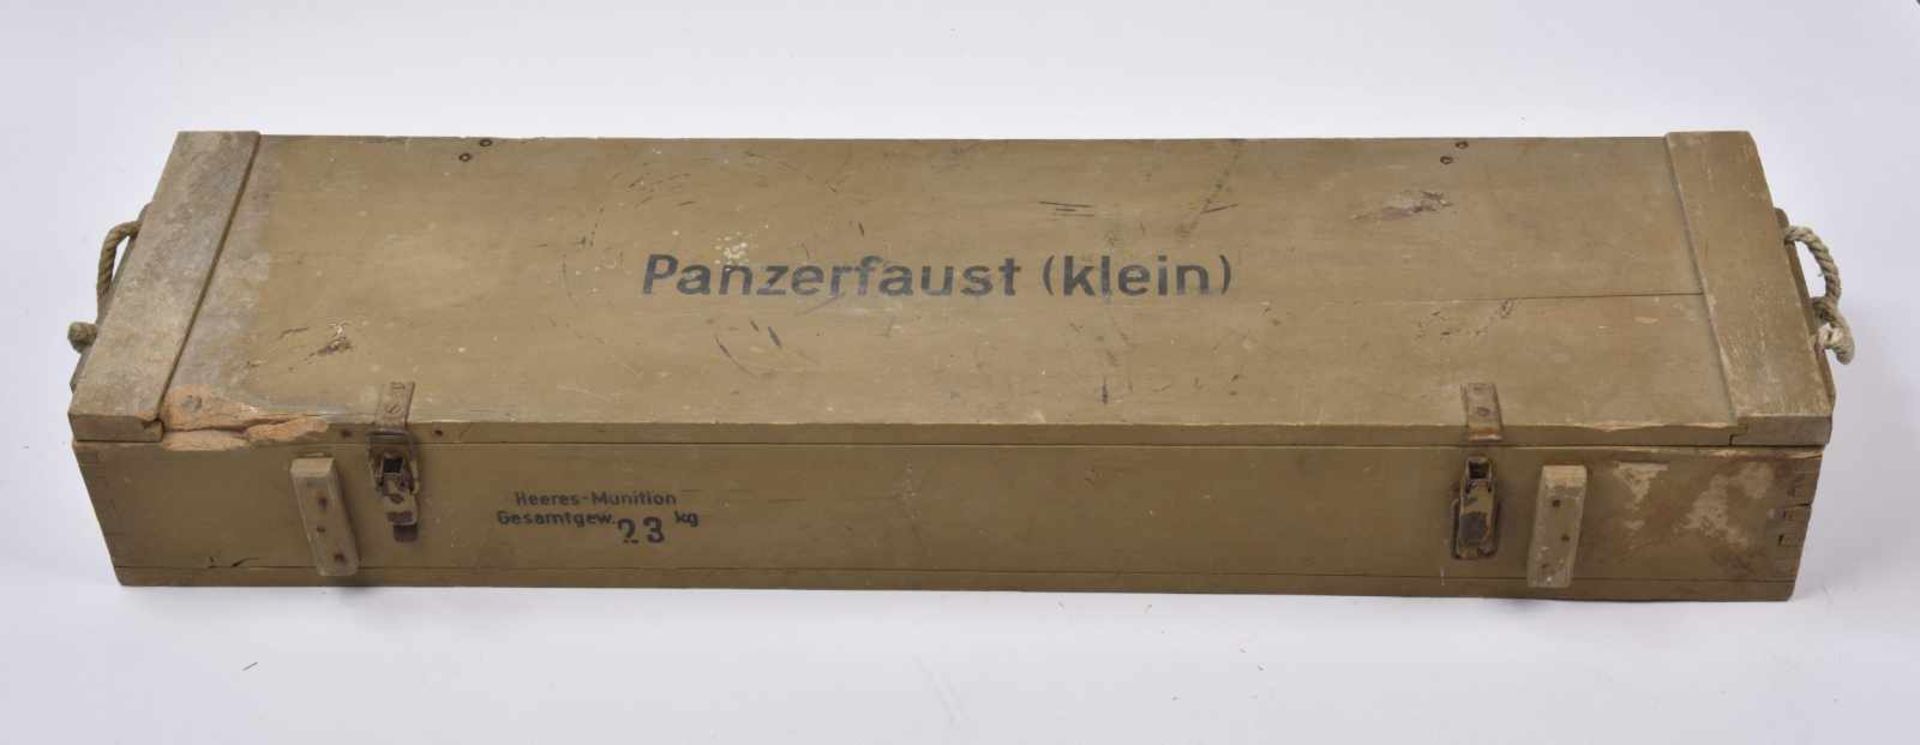 Caisse pour Panzerfaust Klein en bois, peinture sable à 80%, marquages sur le couvercle «